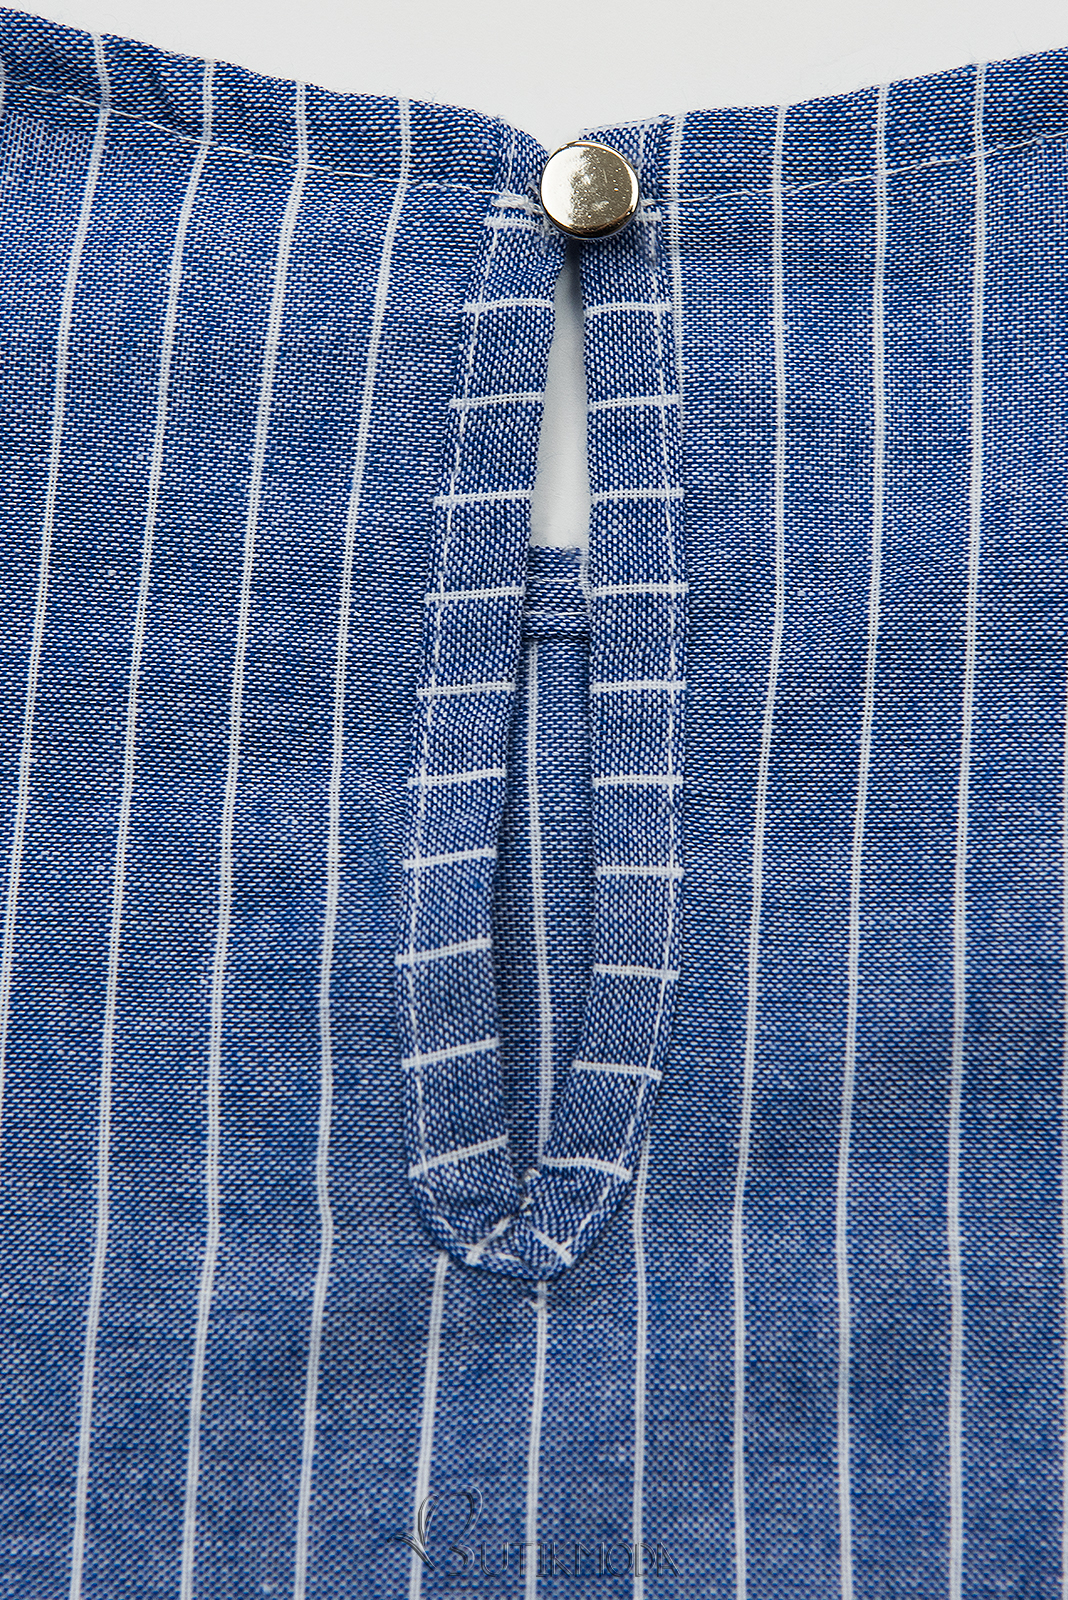 Kék és fehér színű csíkos ruha fodorral